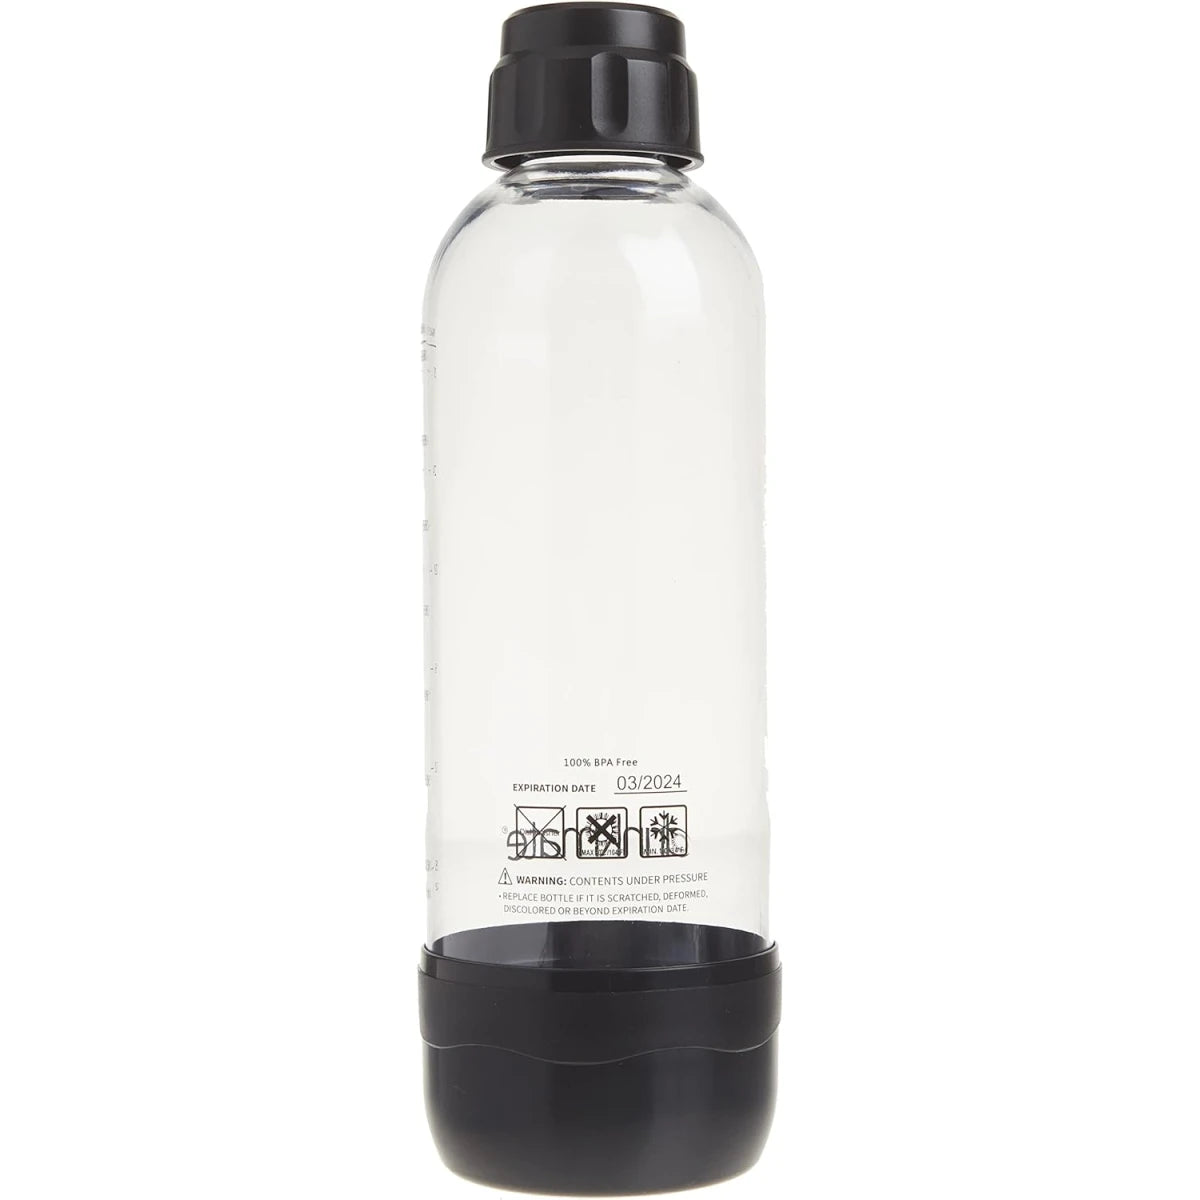 Drinkmate Carbonation Bottles - 1Pack